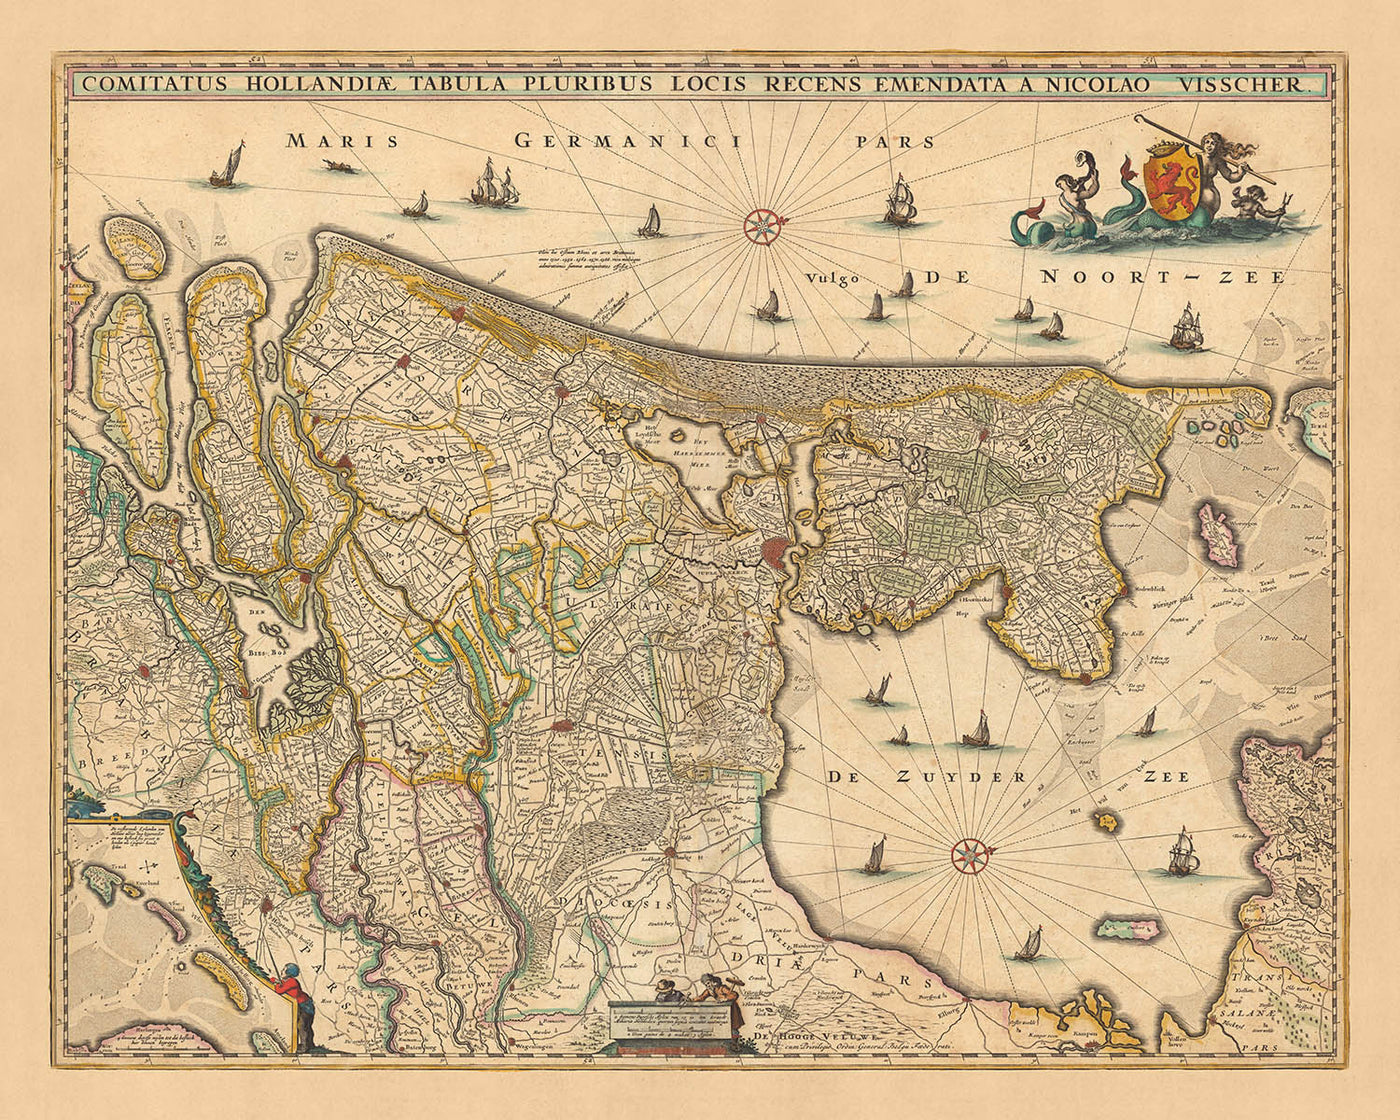 Old Map of Holland by Visscher, 1690: Amsterdam, Rotterdam, The Hague, Utrecht, Leiden